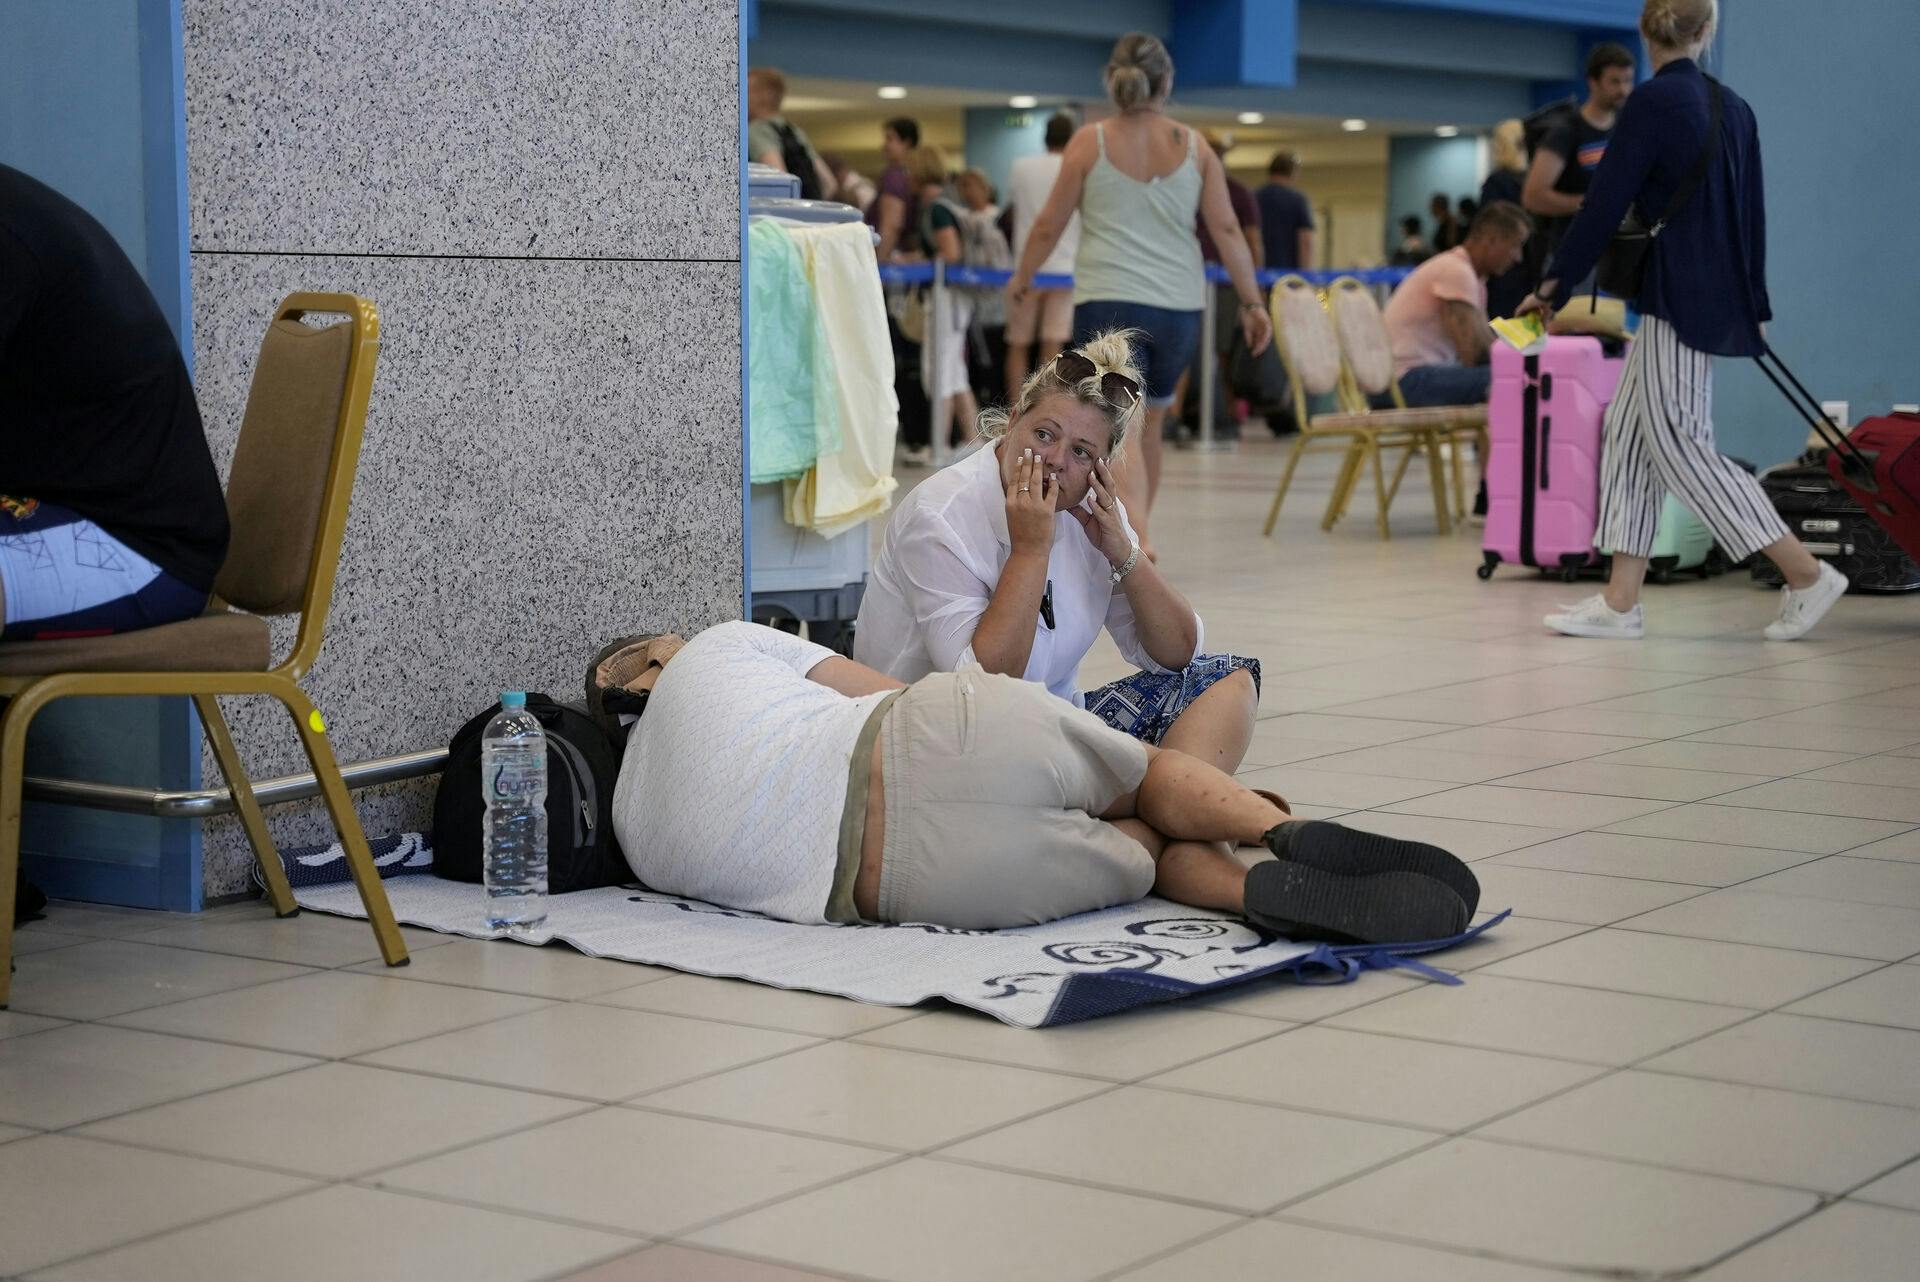 Også i øens lufthavn må turisterne væbne sig med tålmodighed.